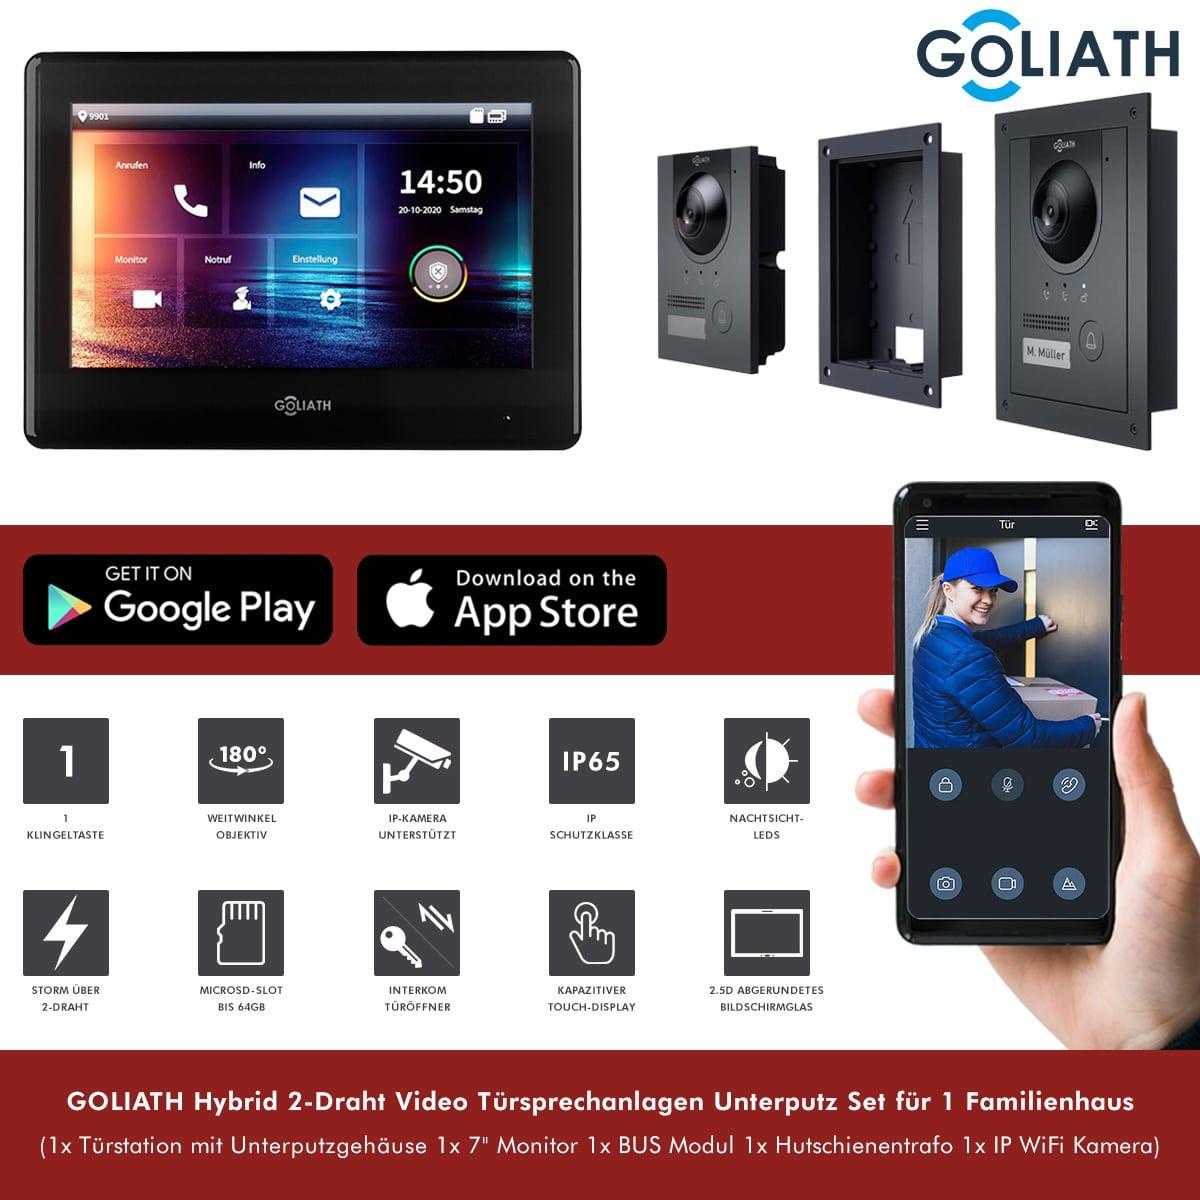 GOLIATH Hybrid 2-Draht Video Türsprechanlage Unterputz Set für 1 Familienhaus 1x 7 Monitor Schwarz Anthrazit mit WiFi-Kamera von Goliath-Intercom